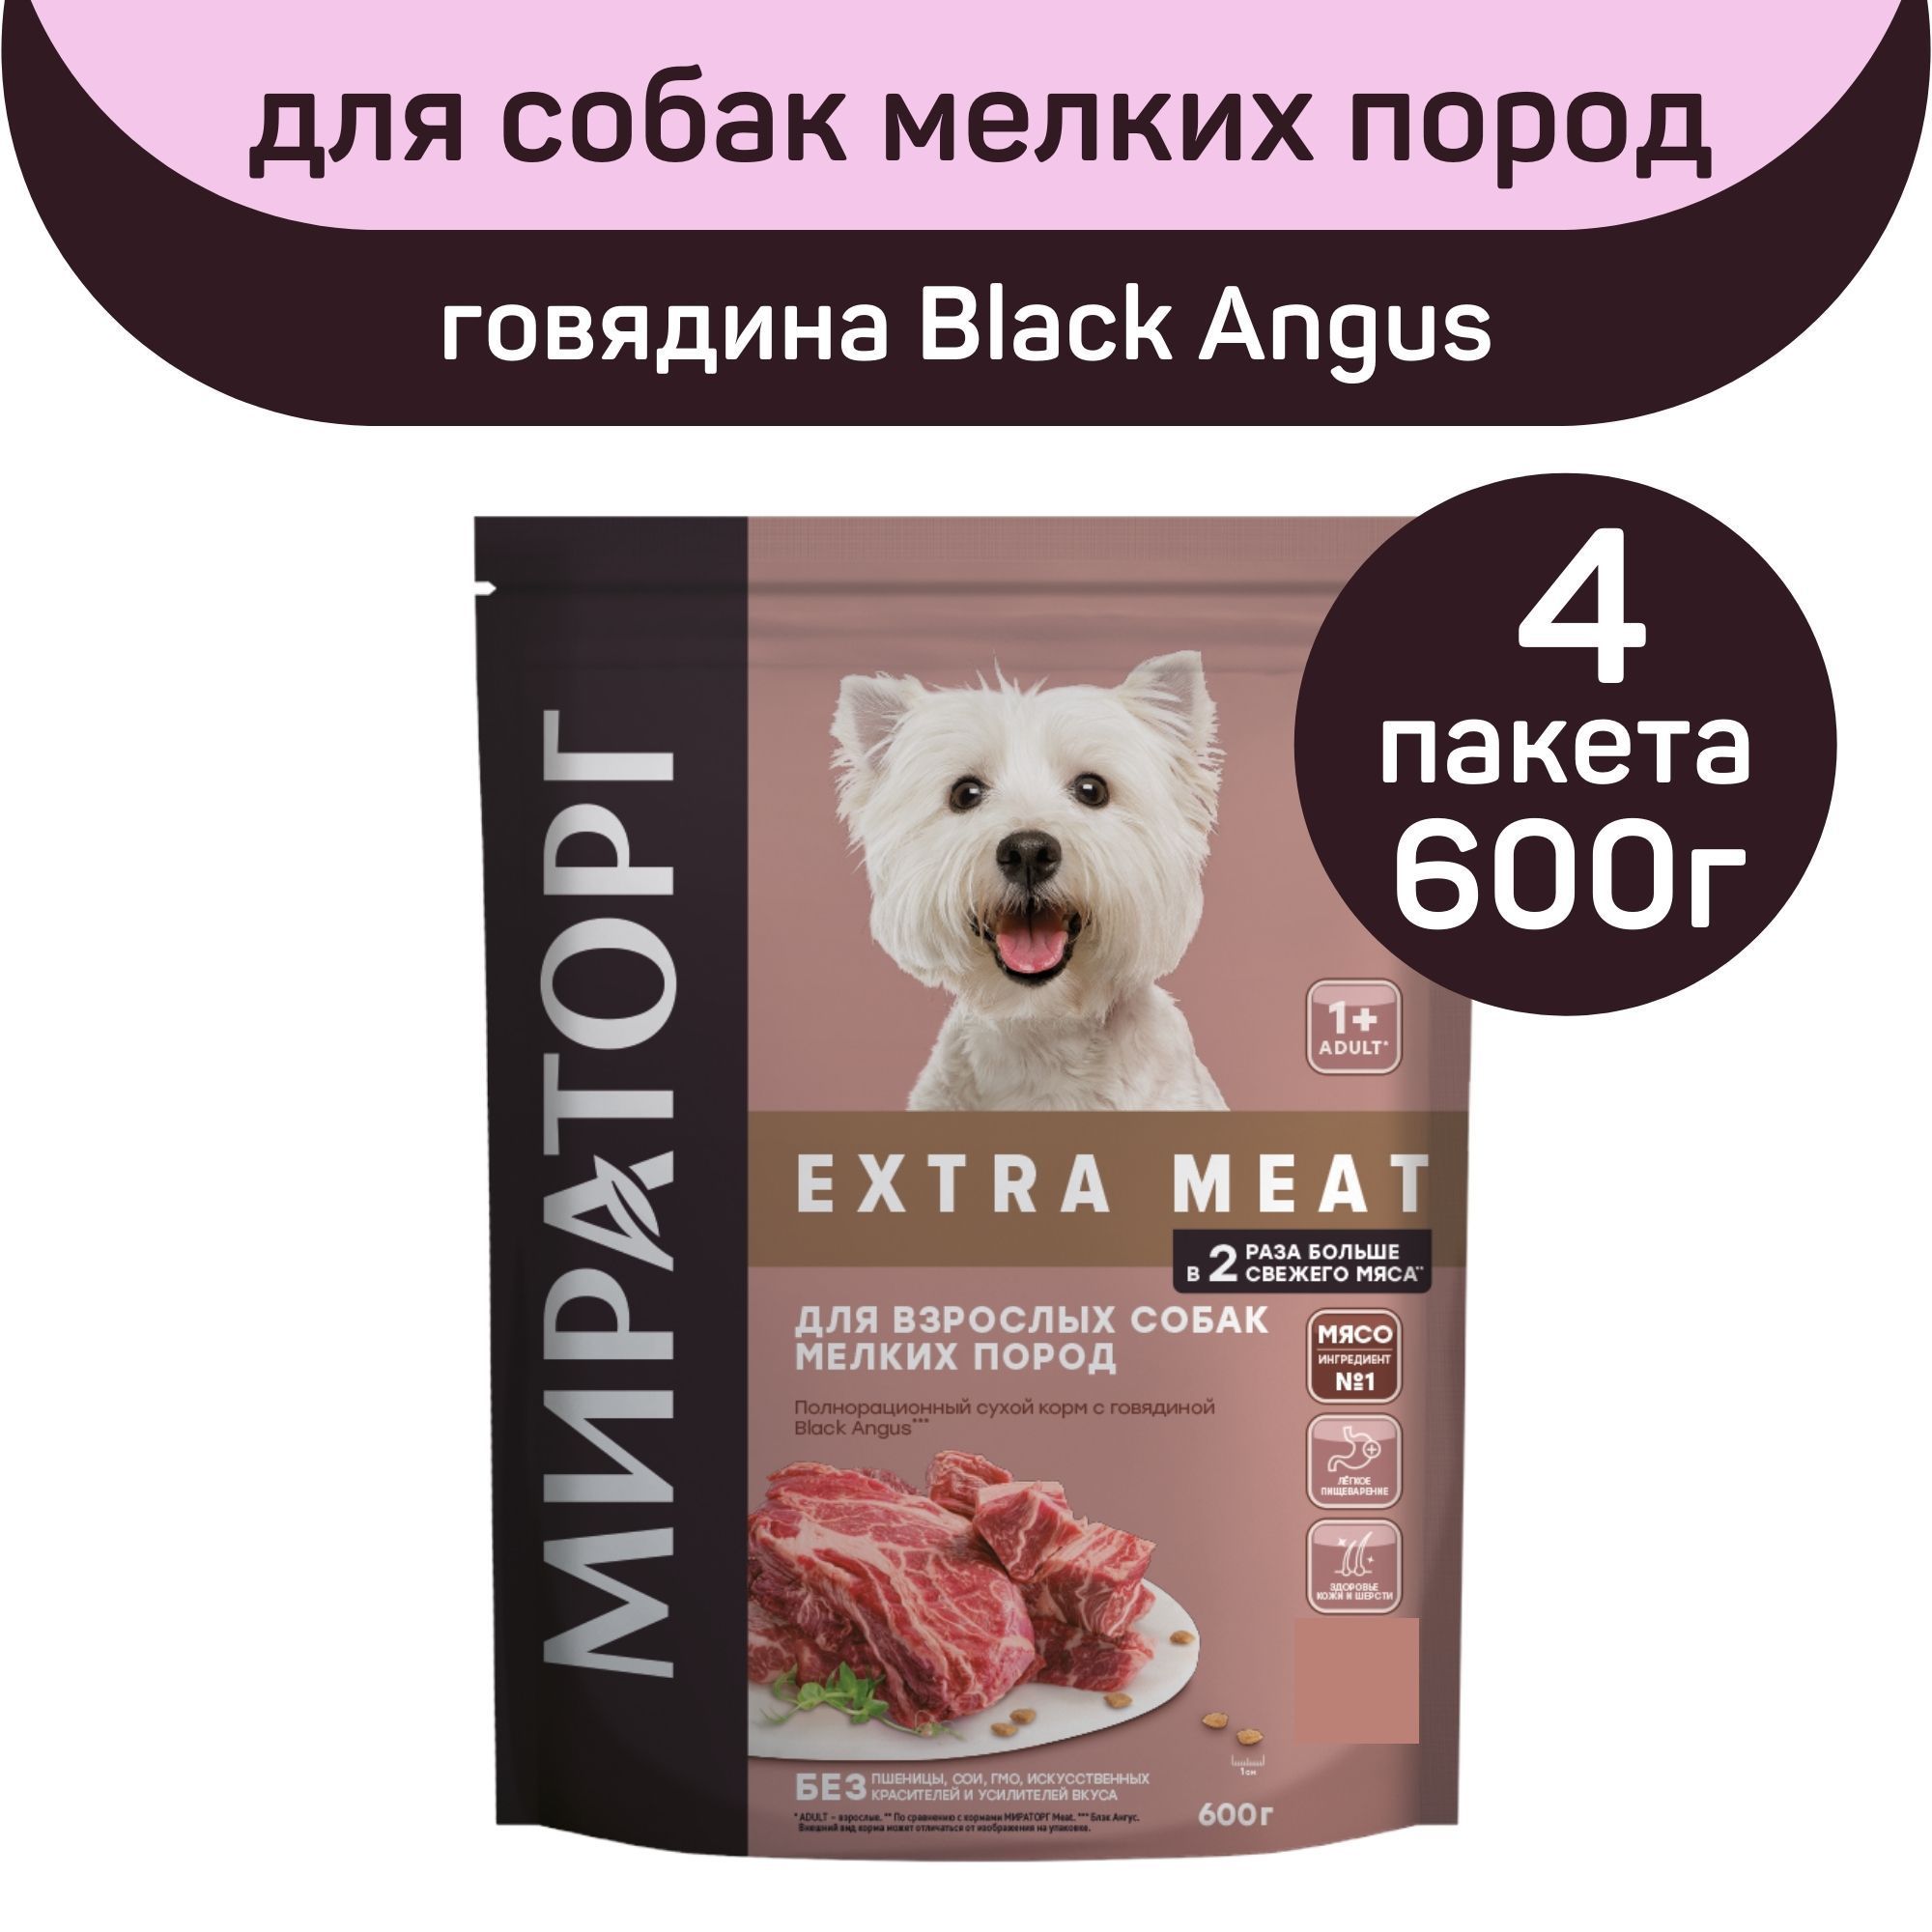 Meat корм для собак